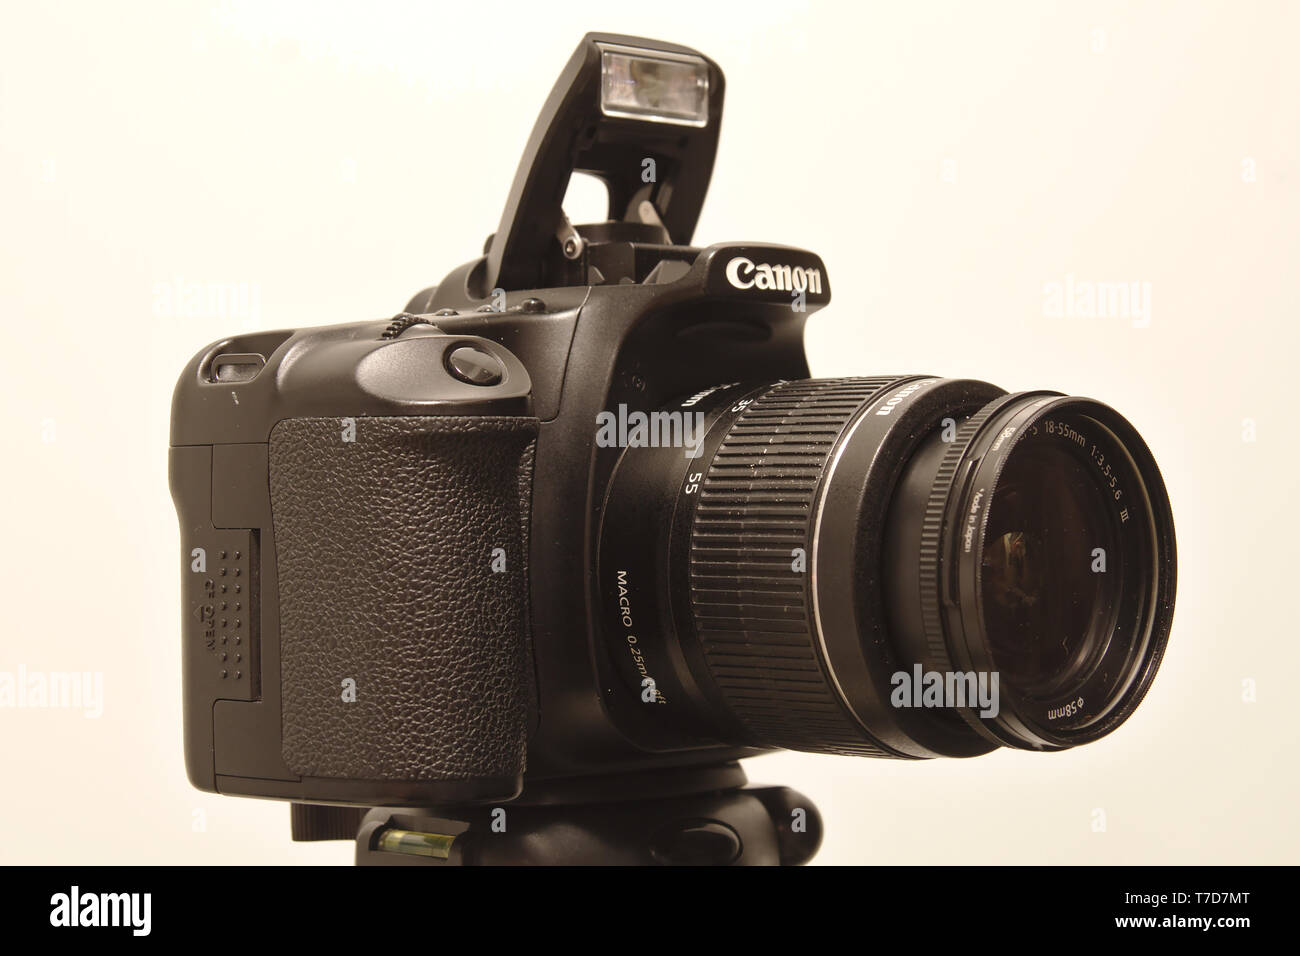 Canon EOS appareil photo numérique avec objectif 18-55mm Canon et construit en flash élevée. Photo prise 05/2018 à Espoo, Finlande Banque D'Images